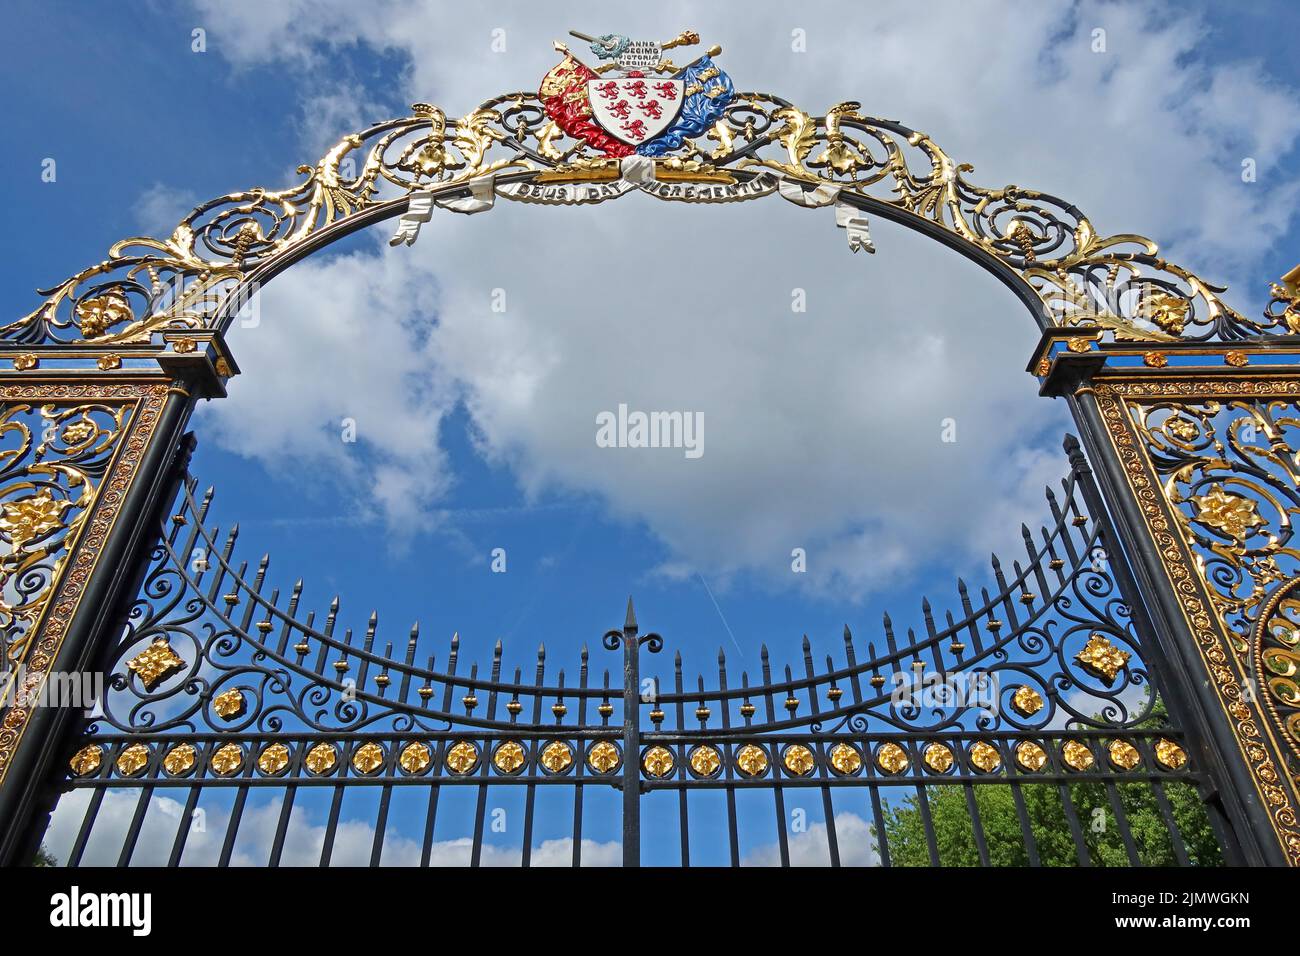 Warrington Golden Gates, hôtel de ville, rue Sankey, Warrington Borough Council, Cheshire, Angleterre, Royaume-Uni Banque D'Images